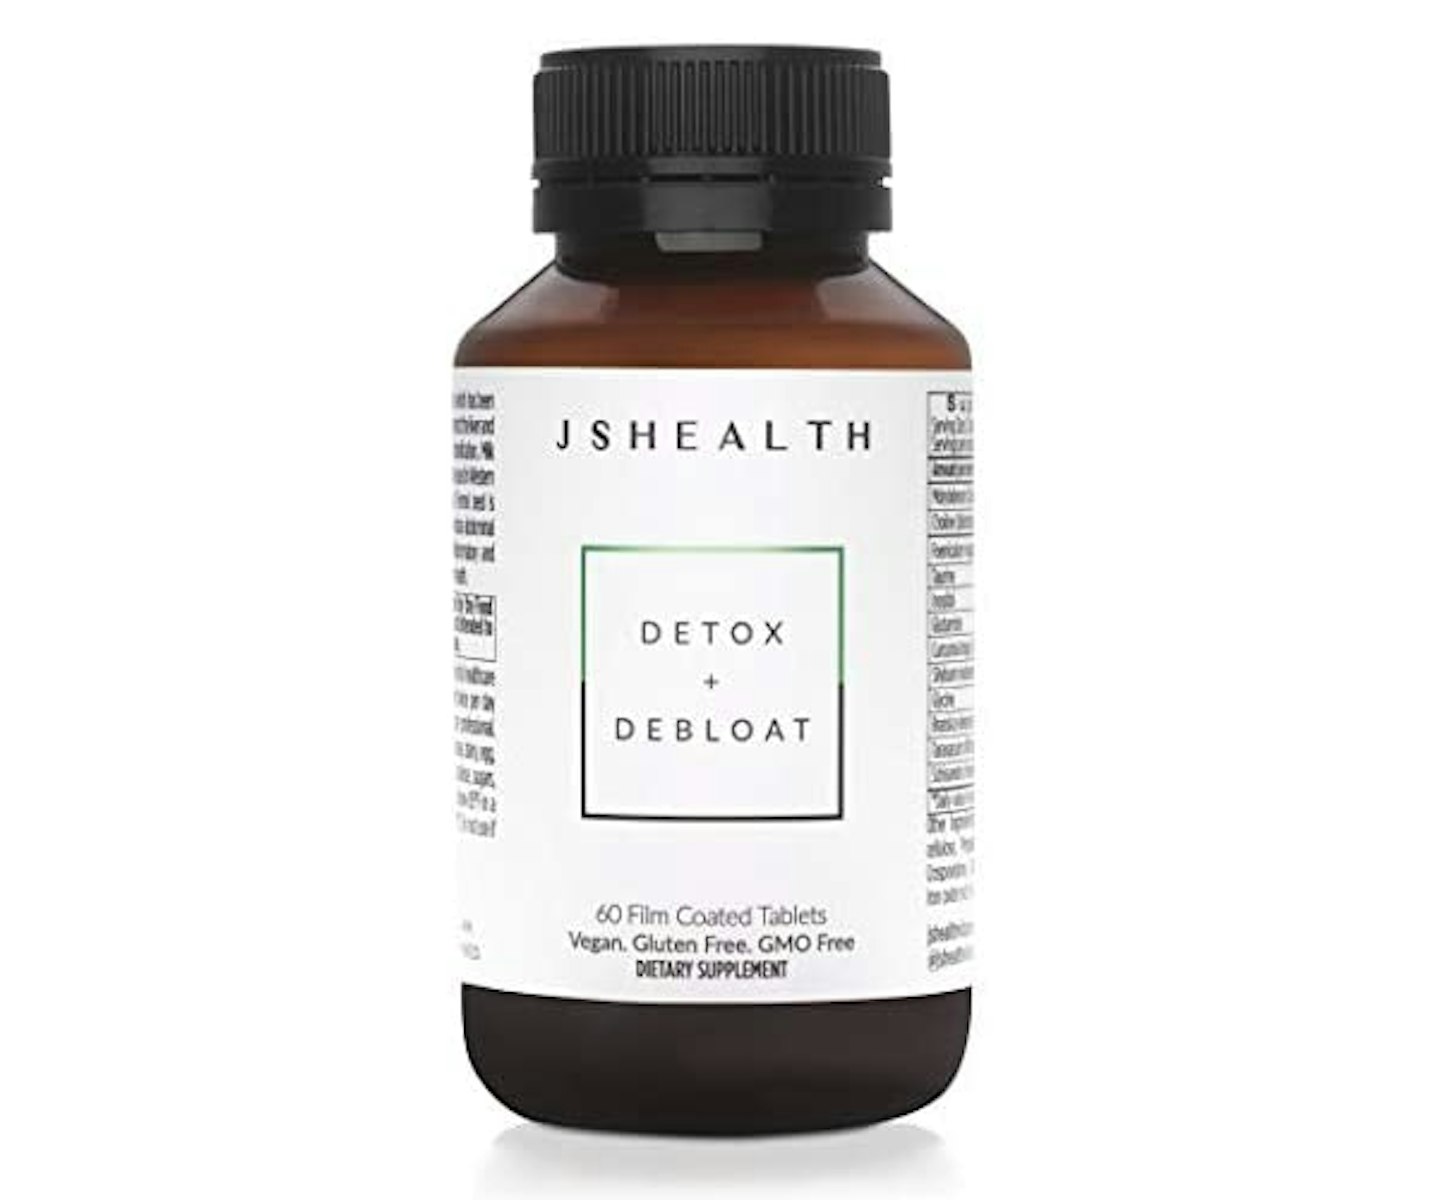 JS Health Detox + Debloat formula, £29.99